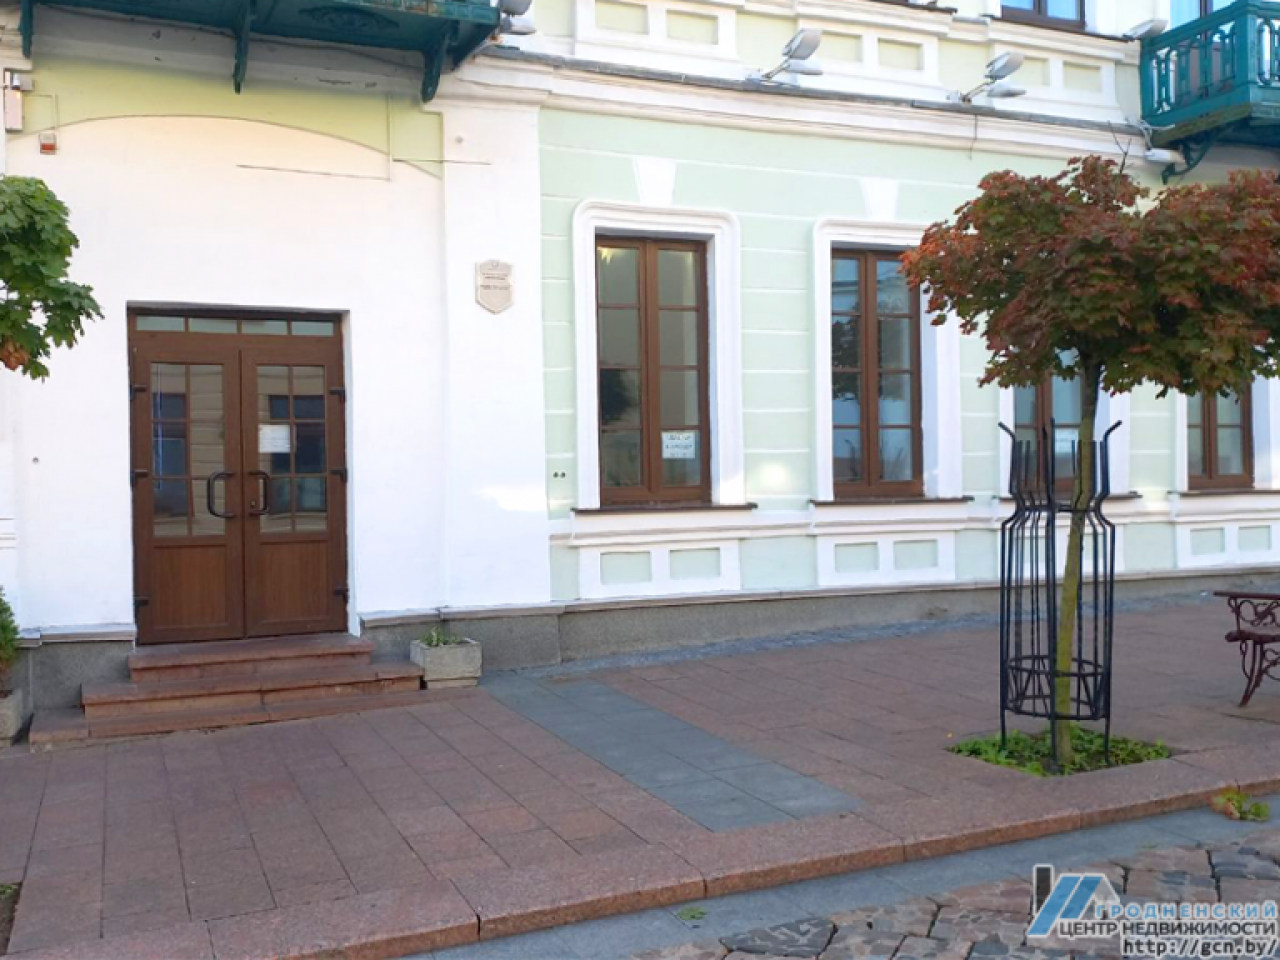 Бывший офис оператора A1 в центре Гродно выставили на аукцион — разыгрывают право аренды